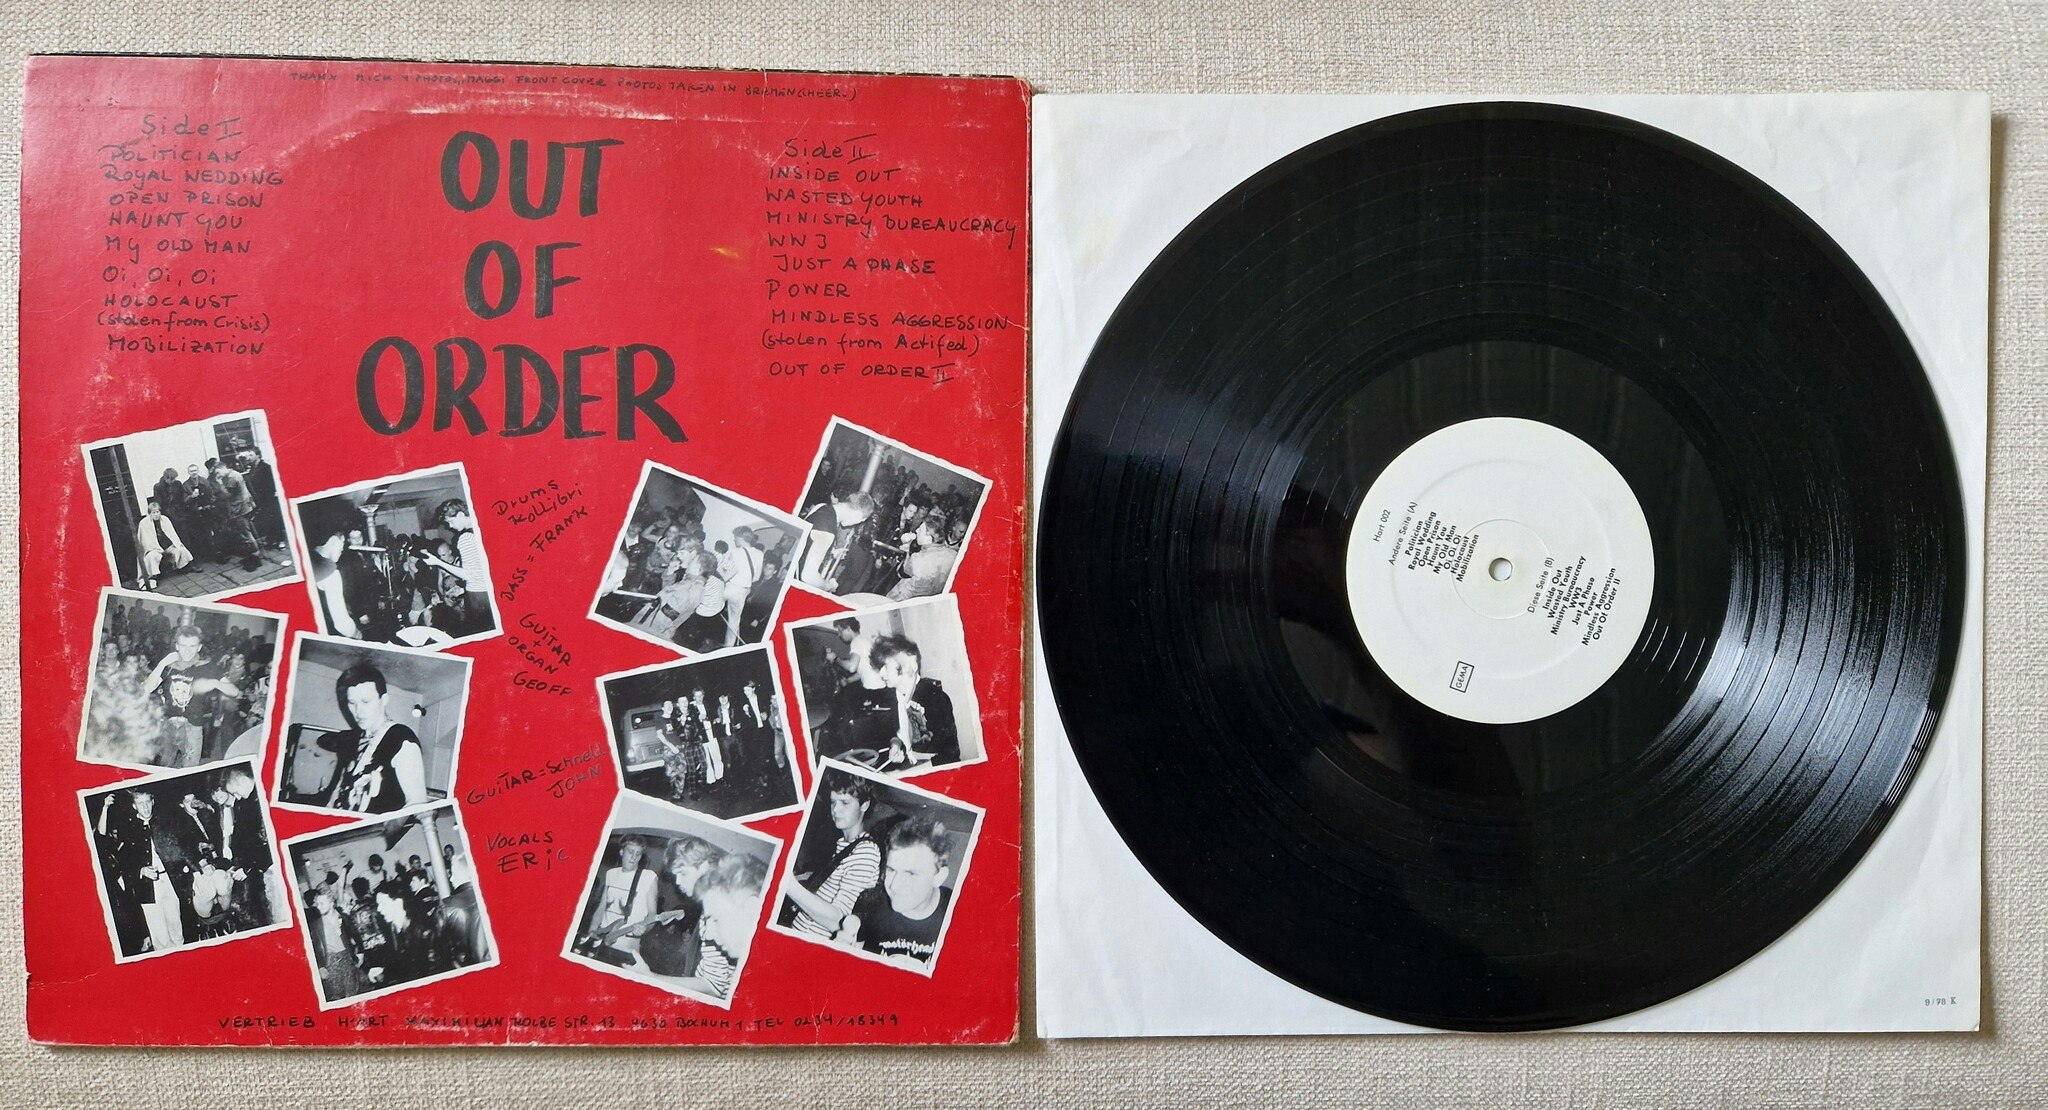 Out of Order, Open prison. Vinyl LP